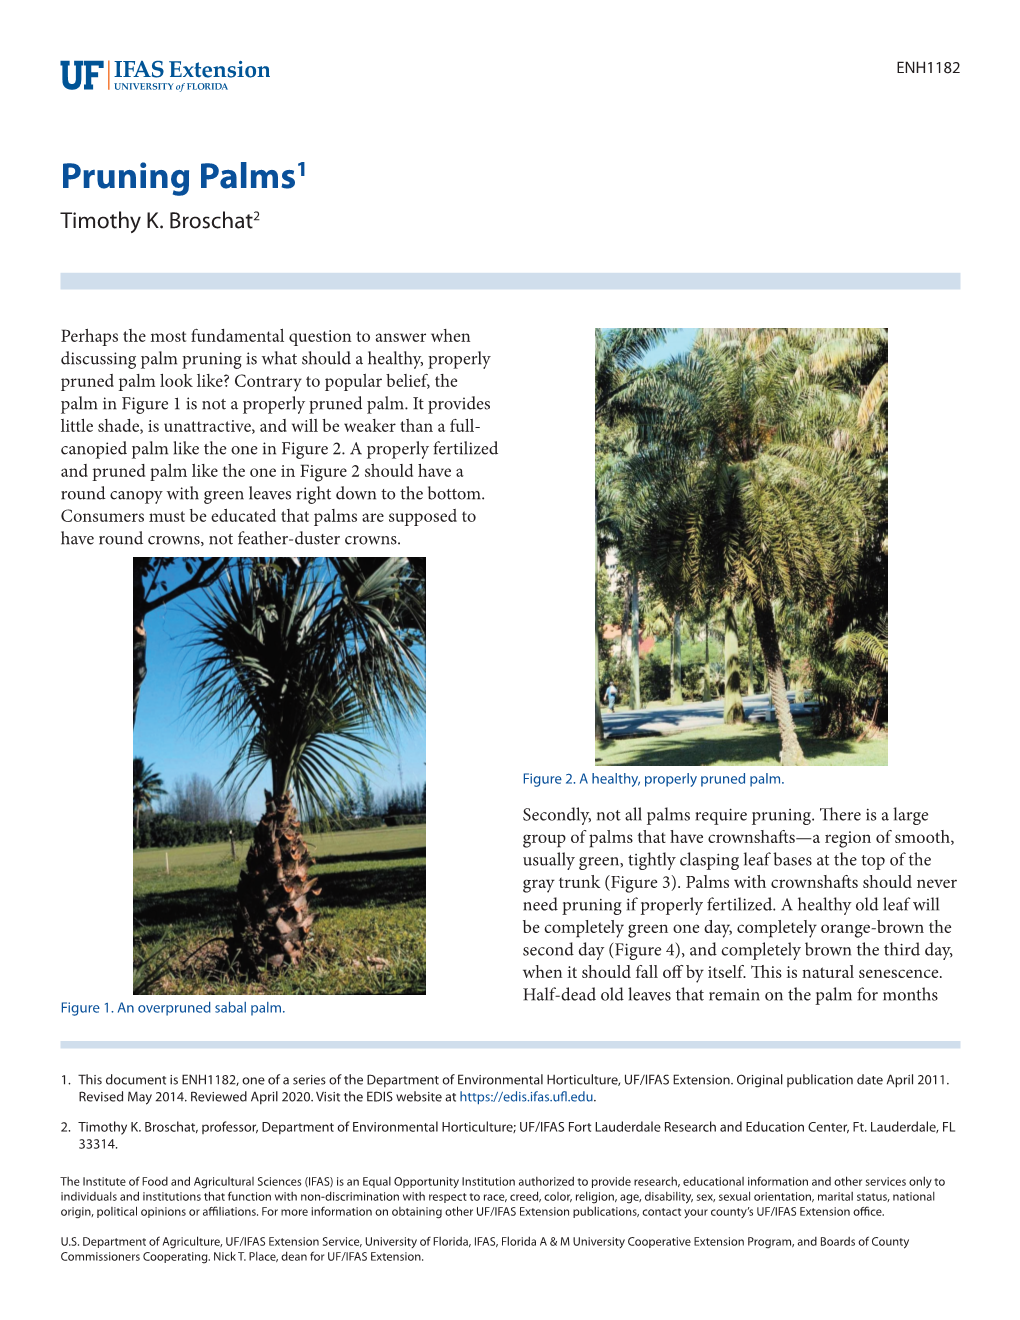 Pruning Palms1 Timothy K